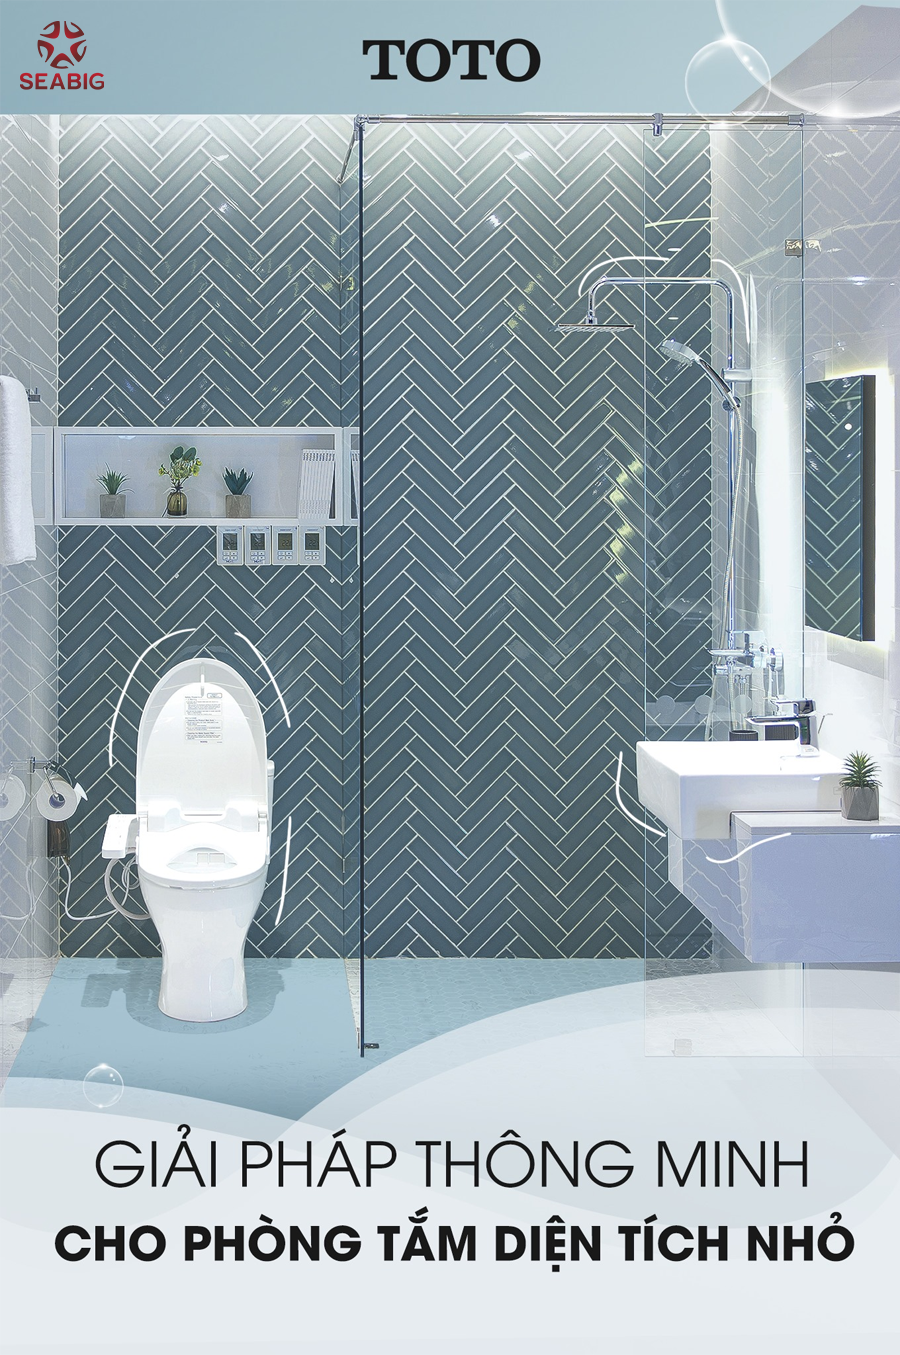 Bạn đang tìm kiếm thiết bị vệ sinh cho phòng tắm nhỏ của mình? TOTO có giải pháp tuyệt vời dành cho bạn! Thiết bị vệ sinh TOTO được thiết kế đặc biệt để phù hợp với các phòng tắm có diện tích nhỏ. Với TOTO, bạn không cần phải lo lắng về không gian nhỏ chật hẹp nữa.